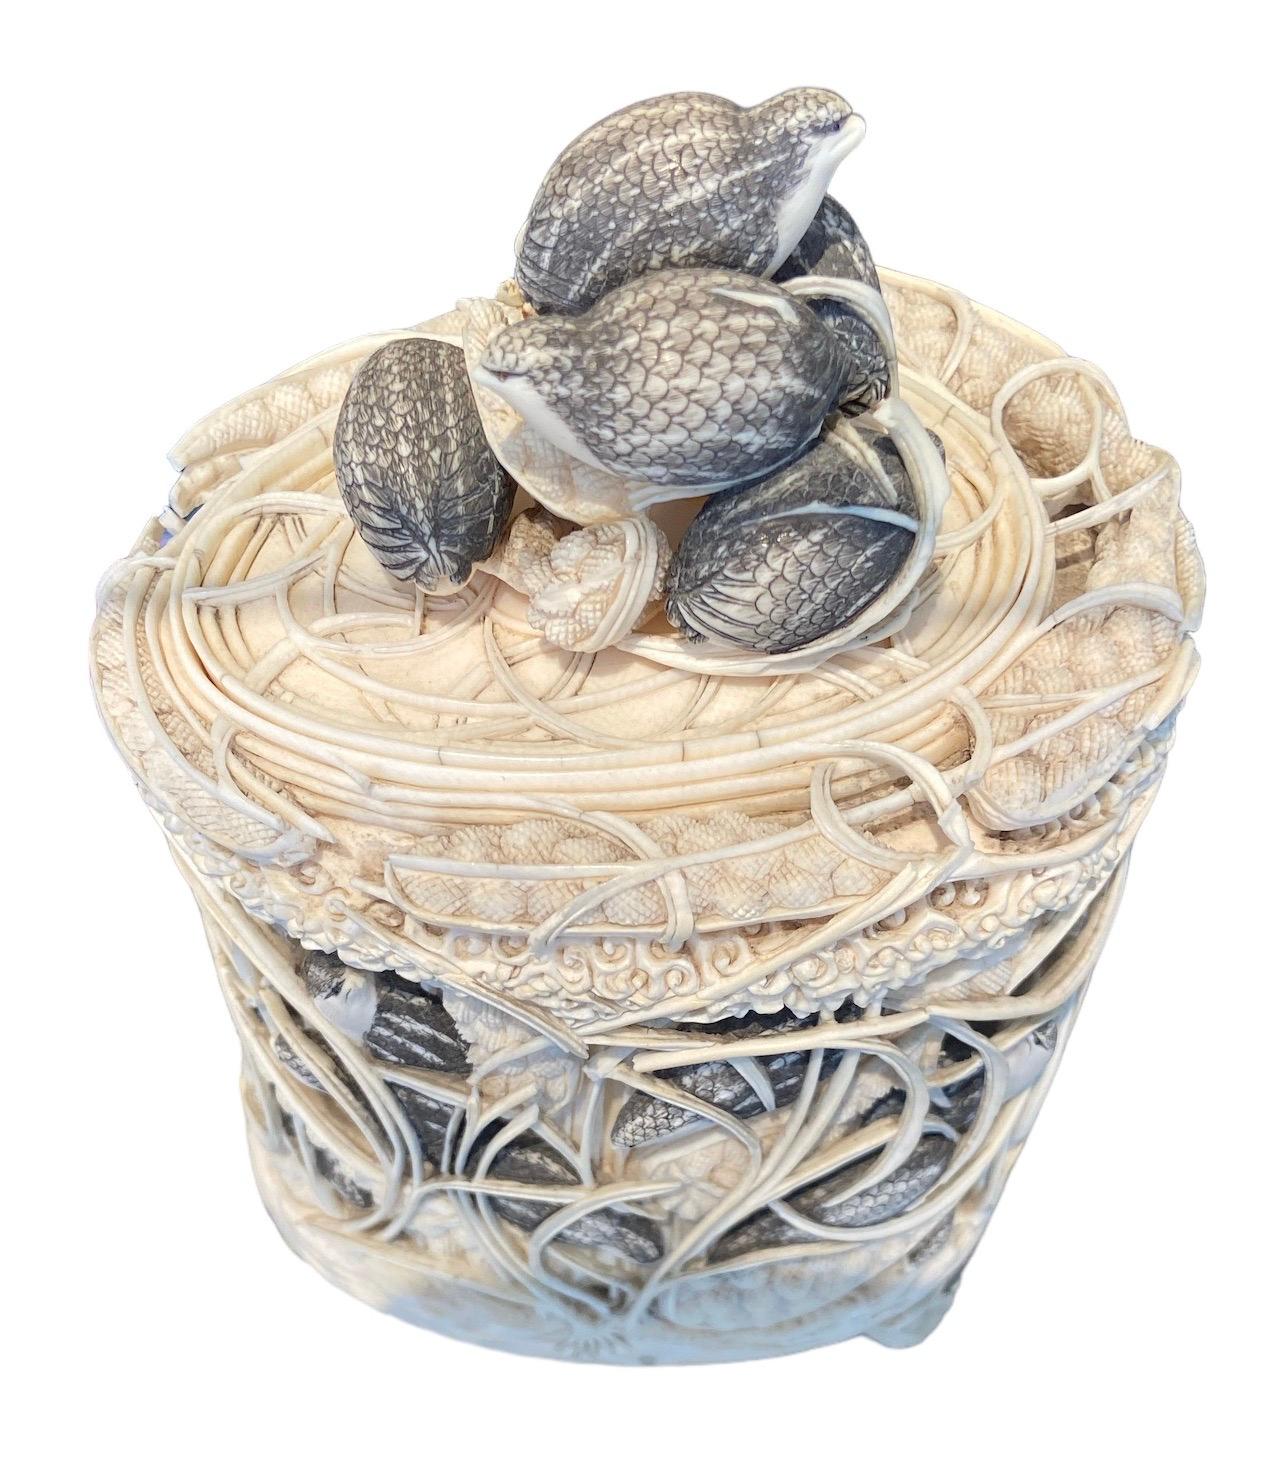 Ovale Dose aus Elfenbein, verziert mit Perlhühnern im Schilf.
Sehr detailliert und realistisch. Handgeschnitzt, hochqualifizierte Handwerkskunst.